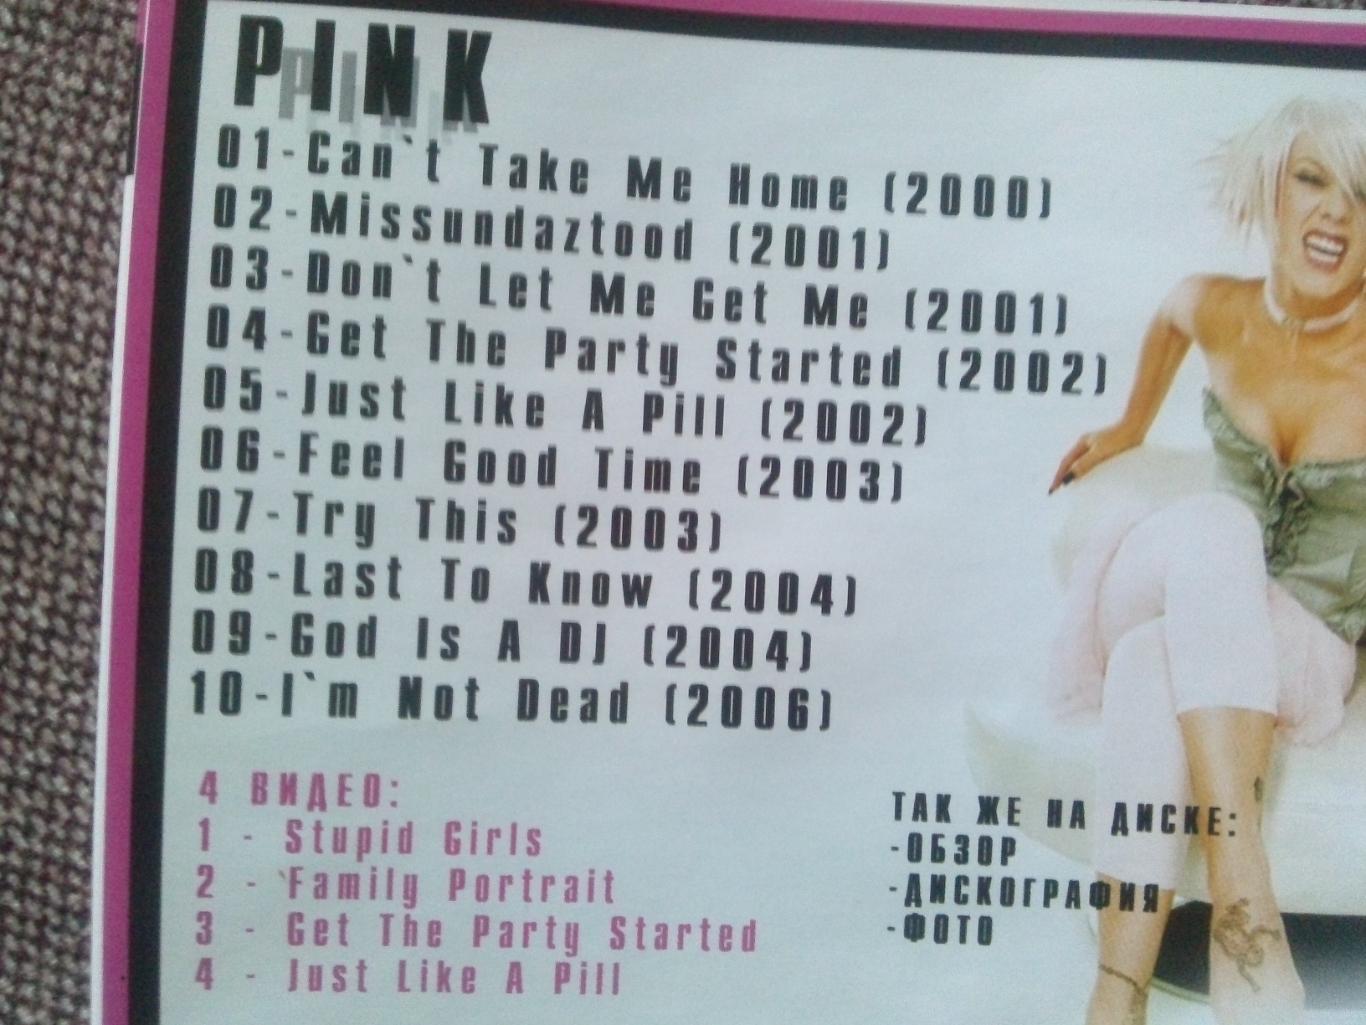 MP - 3 CD диск :Pink2000 - 2006 гг. (10 альбомов + 4 видео) лицензия Рок 6